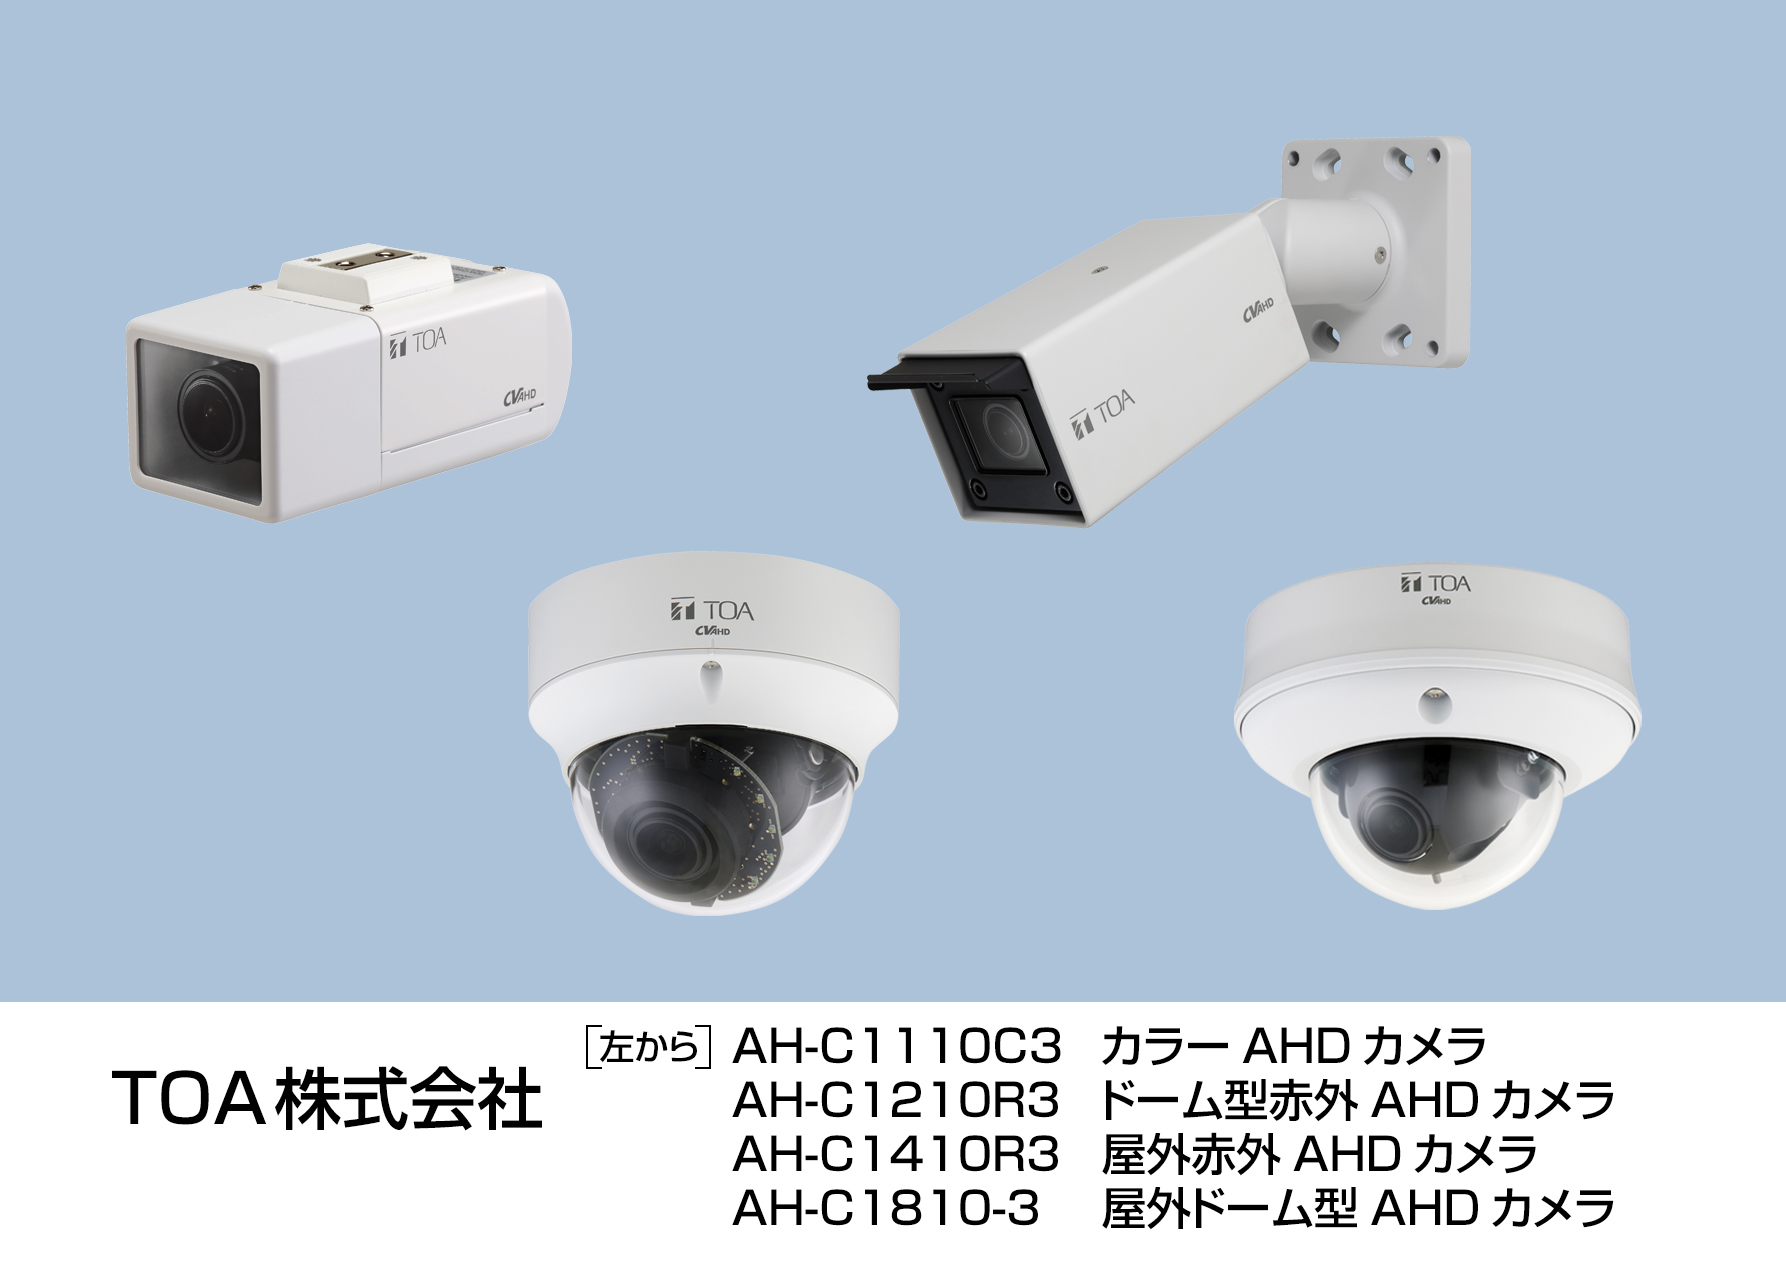 高画質防犯カメラシステム「AHDカメラシステム」をリニューアル | TOA